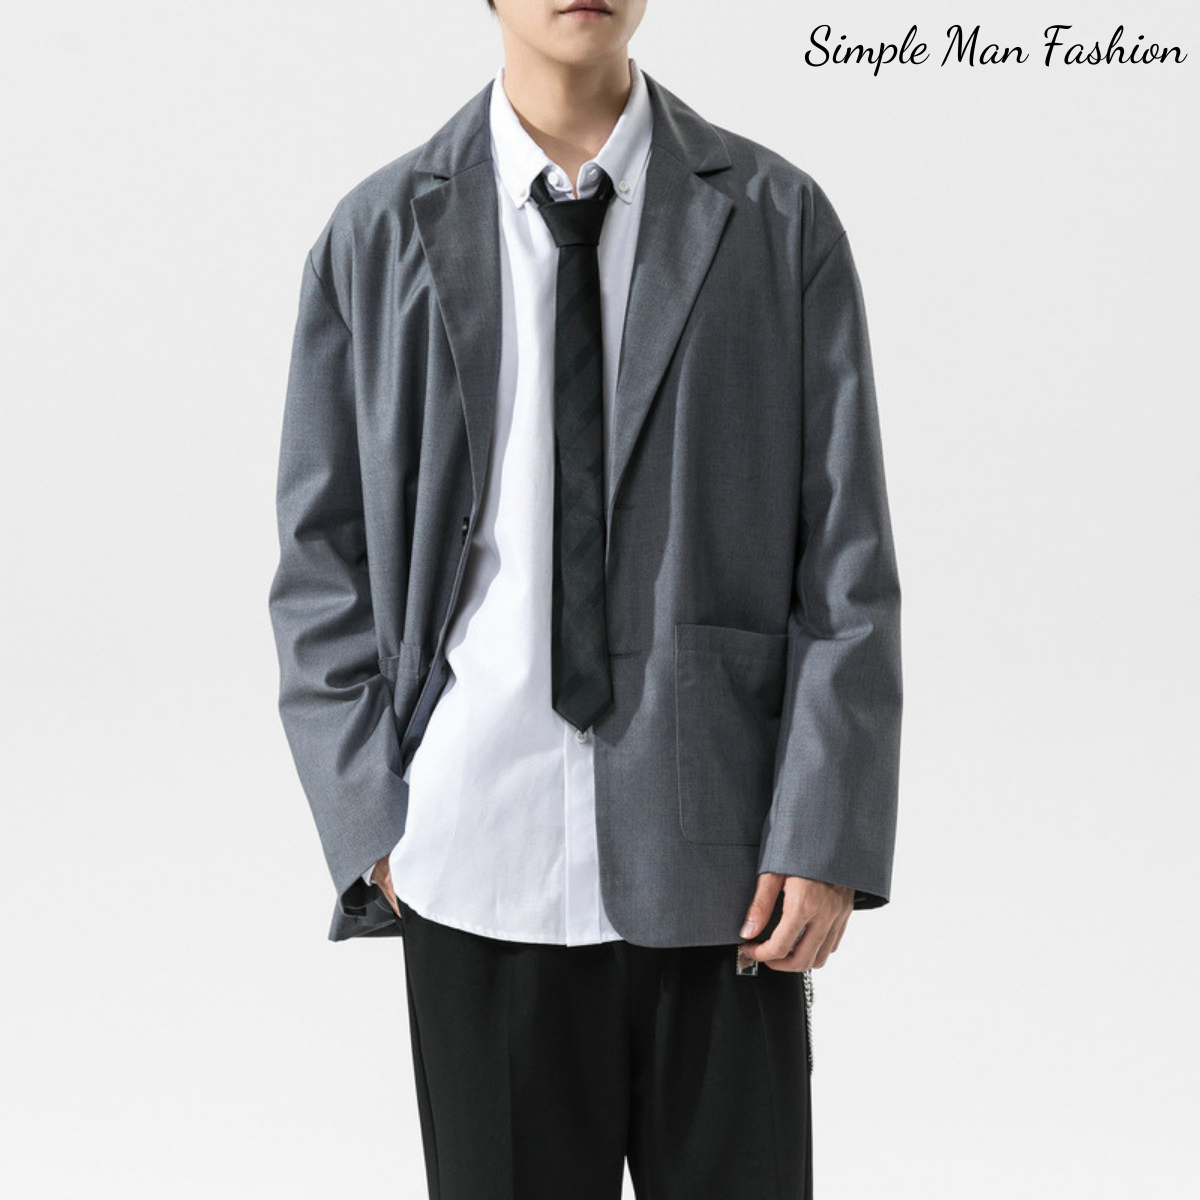 Áo blazer nam phong cách Unisex Hàn Quốc, mặc khoác công sở, đi học hay dạo phố đều phù hợp – Simple Man Fashion